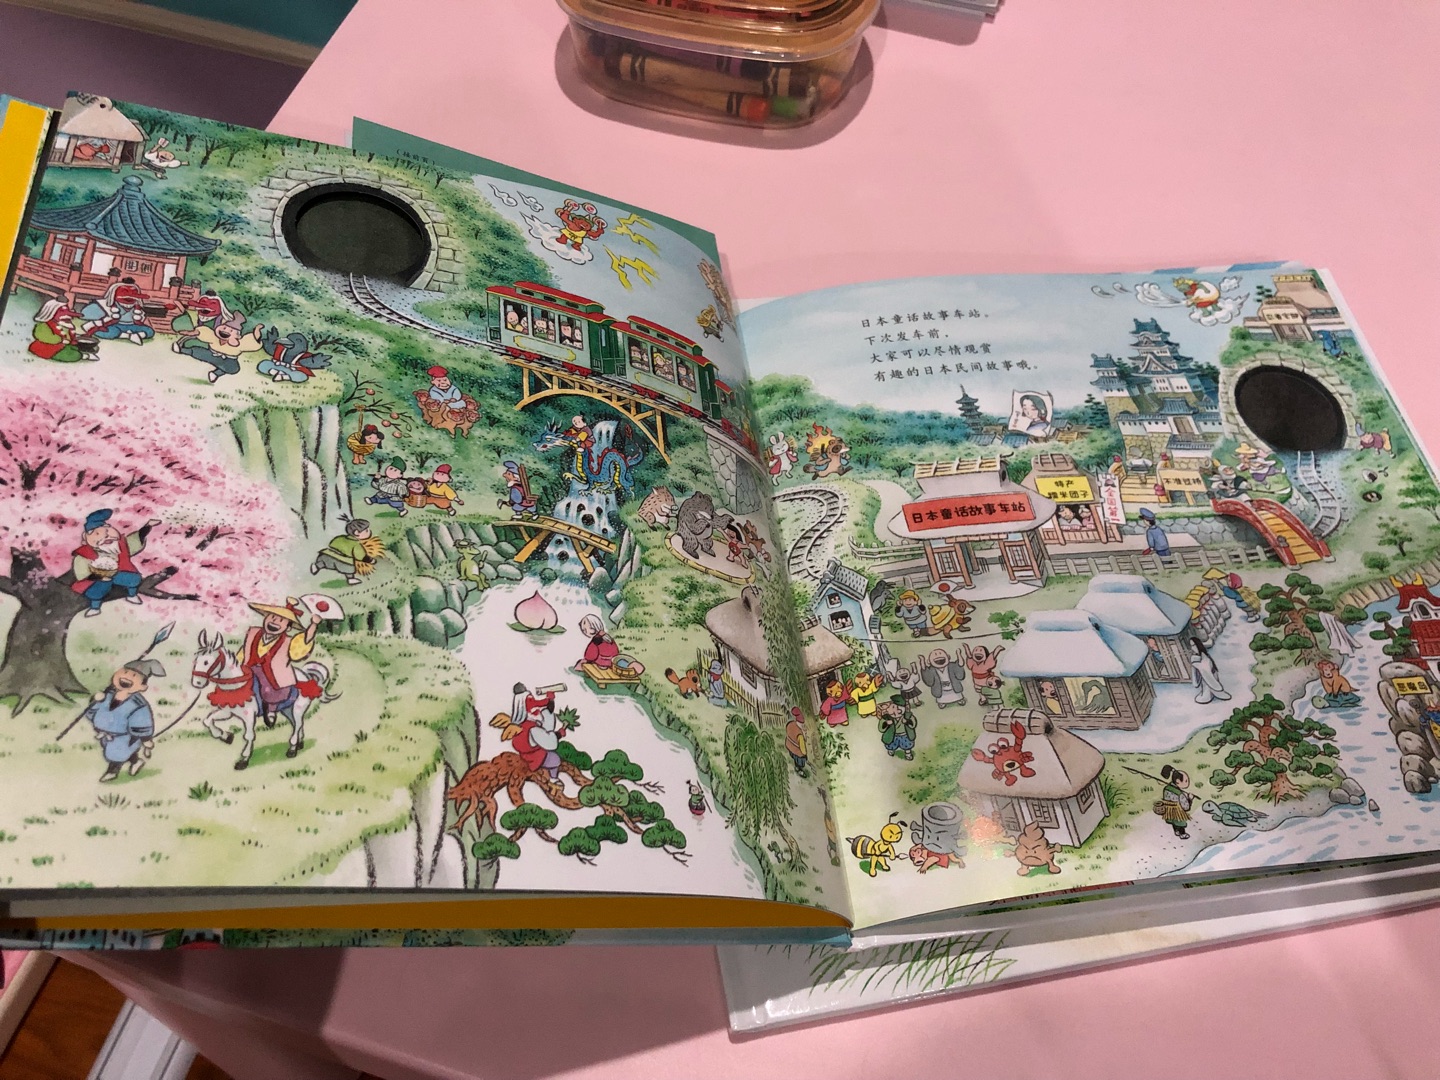 坐上童话列车穿越隧道，翻页之后是一场视觉大惊喜。日本童话故事车站、世界童话故事车站、海盗的宝藏岛车站……如果对日本童话故事比较了解的话会更好讲